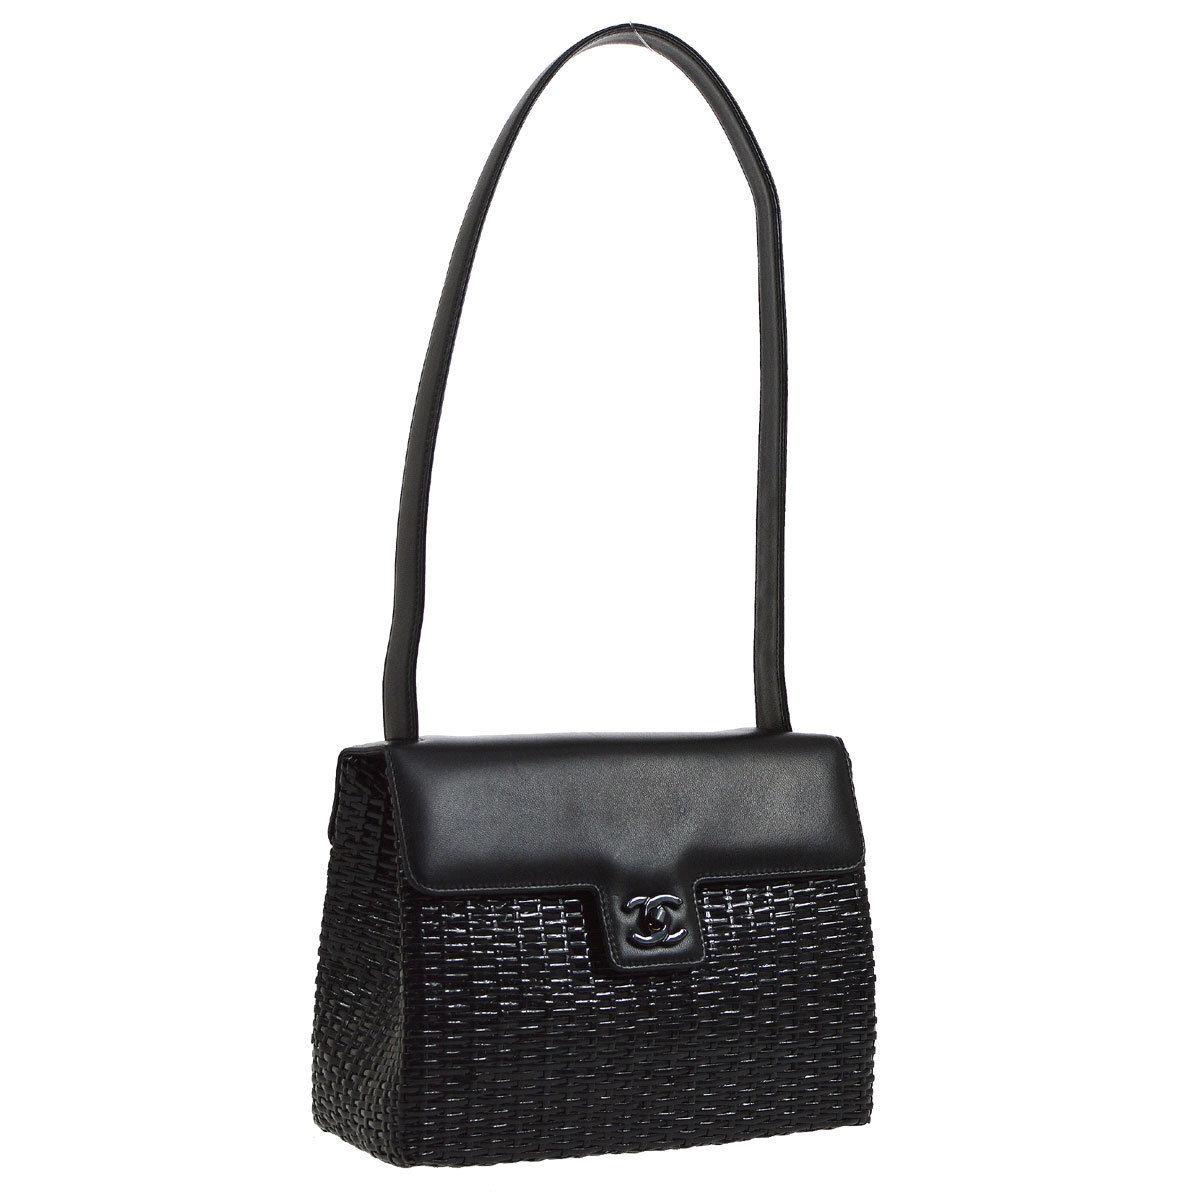 Chanel Black Wicker Basket Leather Top Handle Satchel Flap Shoulder Bag